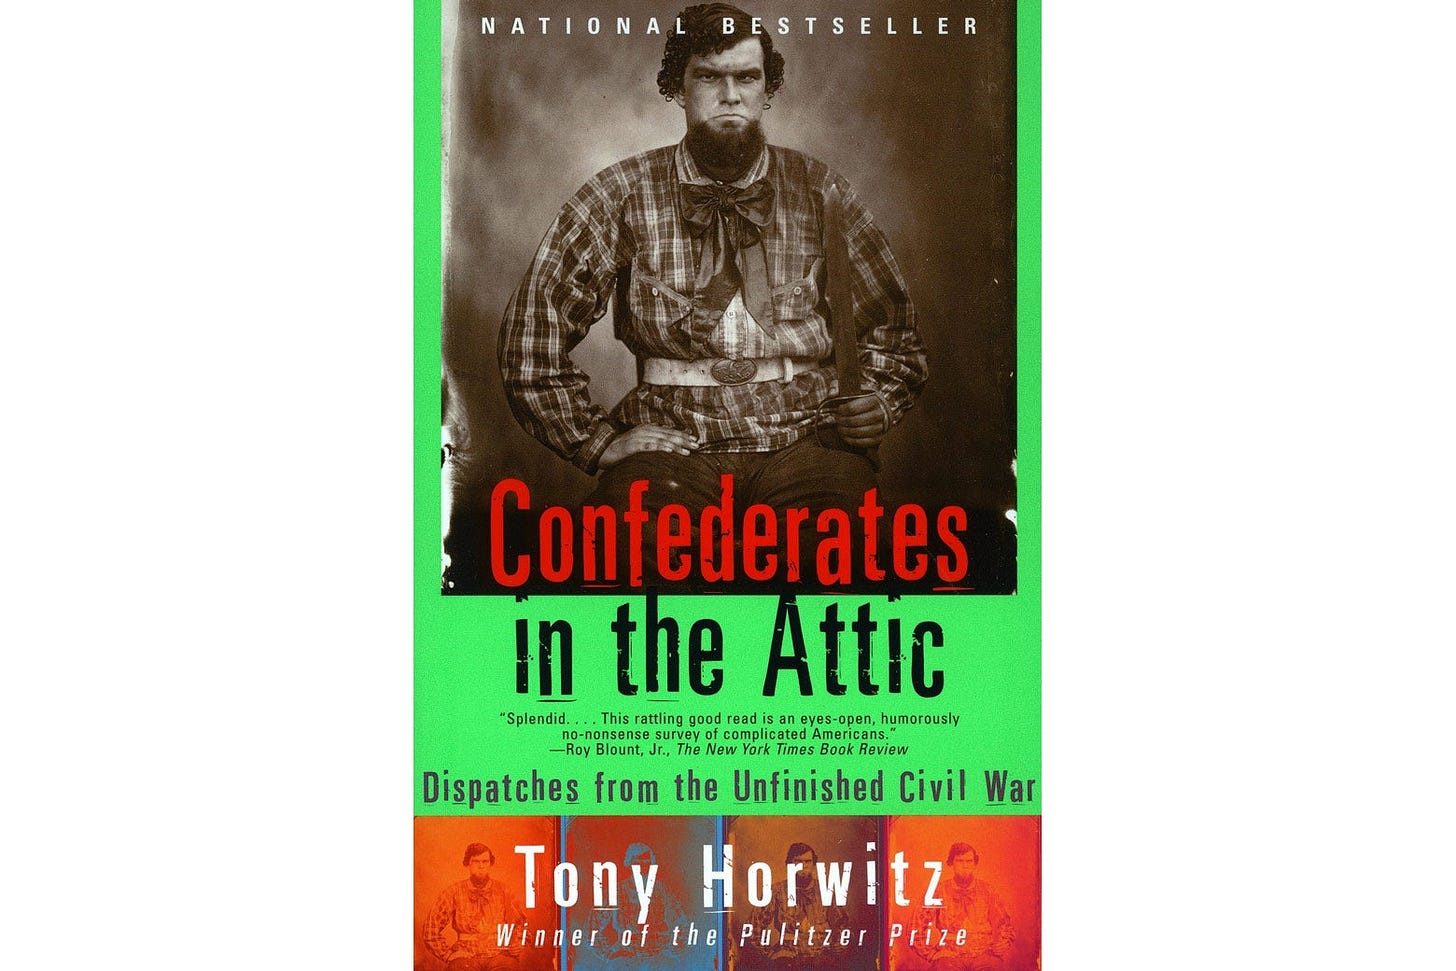 Tony Horwitz, author of Confederates in the Attic, dies.